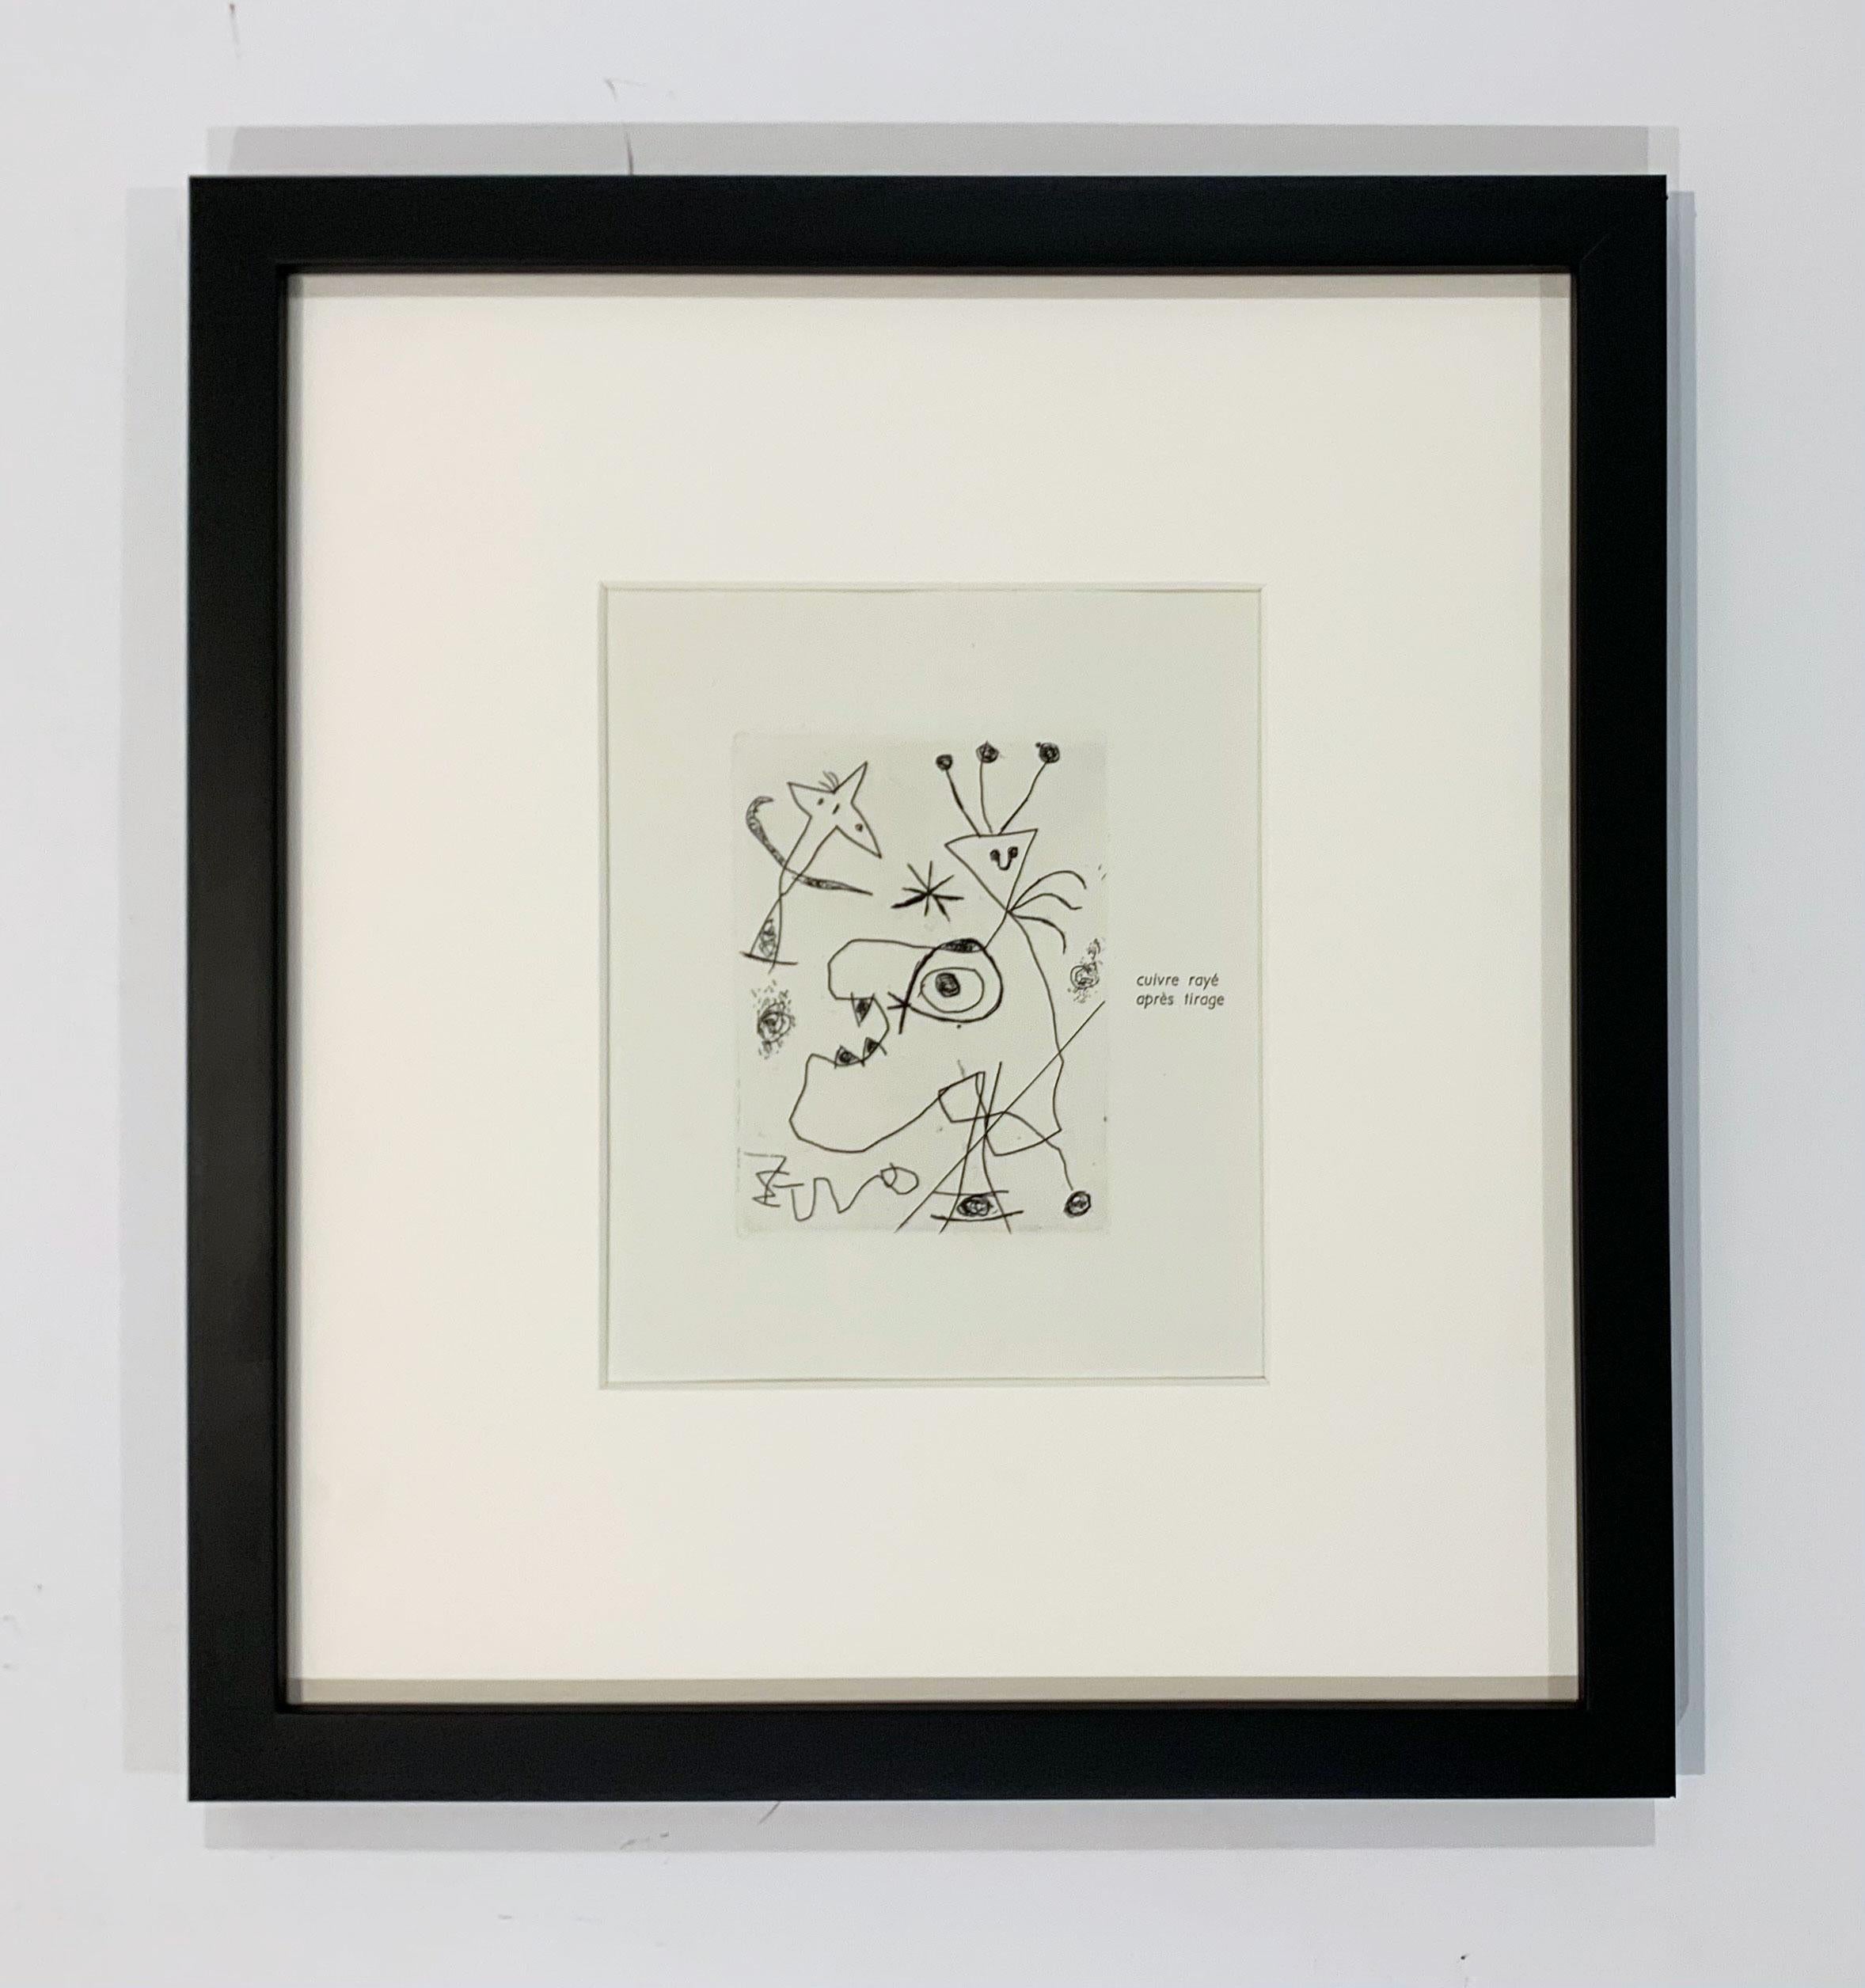 L'Aigrette - Print by Joan Miró